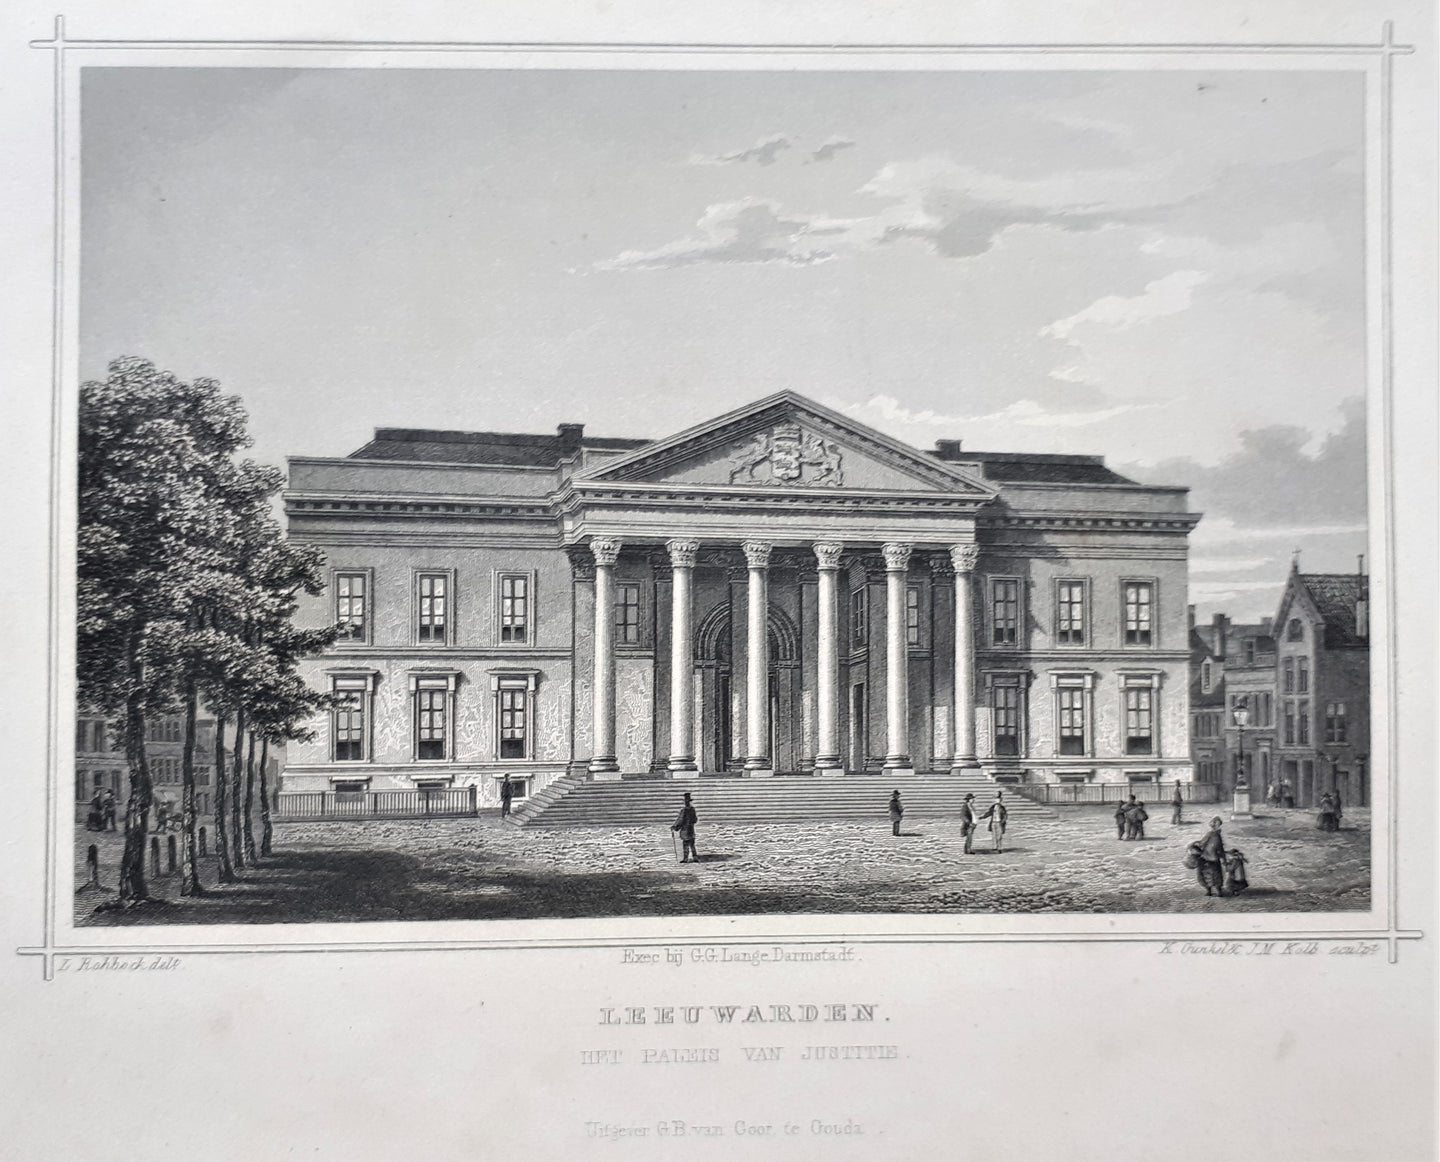 LEEUWARDEN Paleis van Justitie - JL Terwen / GB van Goor - 1858